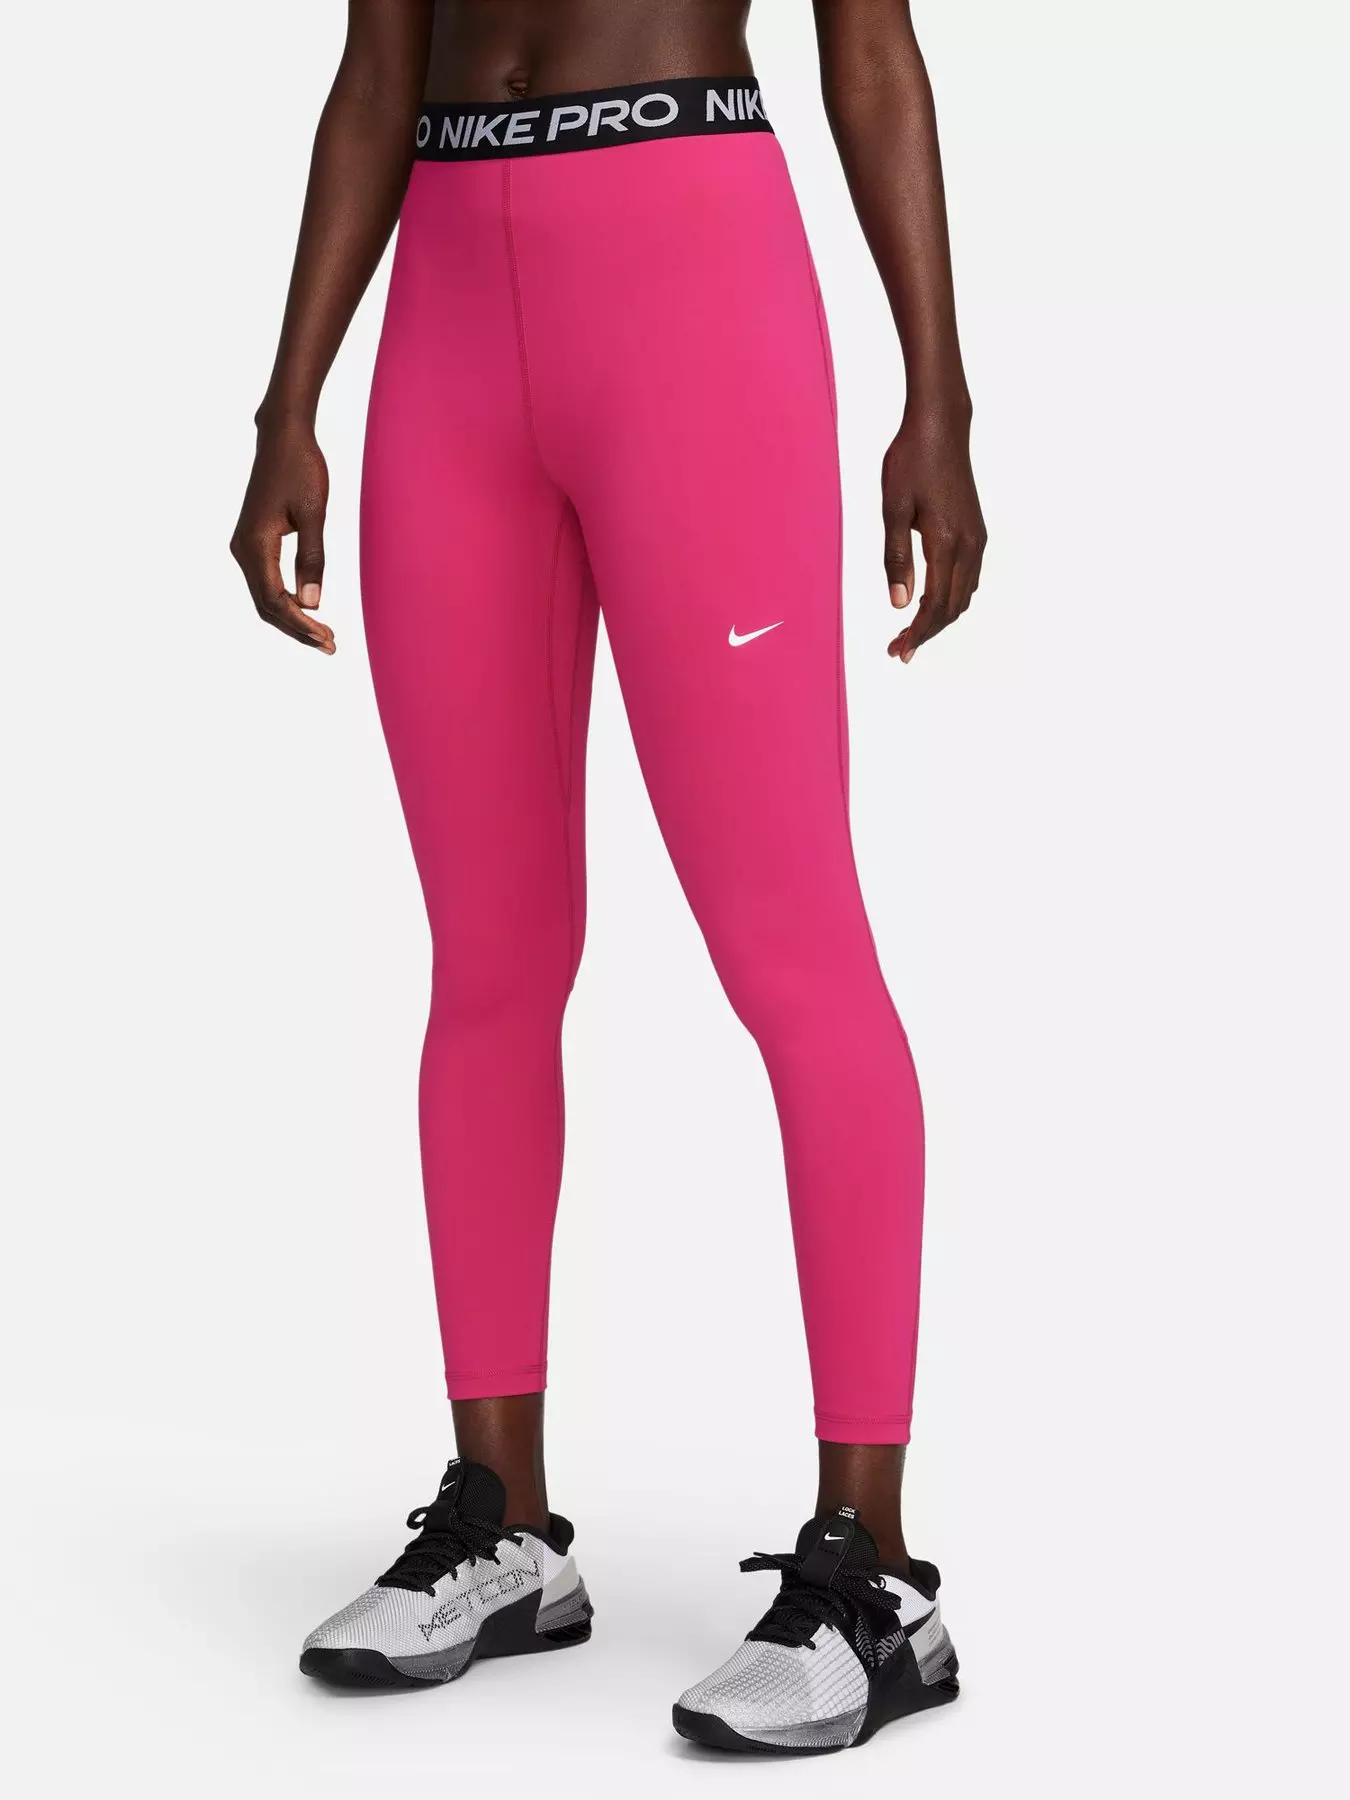 Hot Pink Nike Pro Dri Fit Leggings - Gem